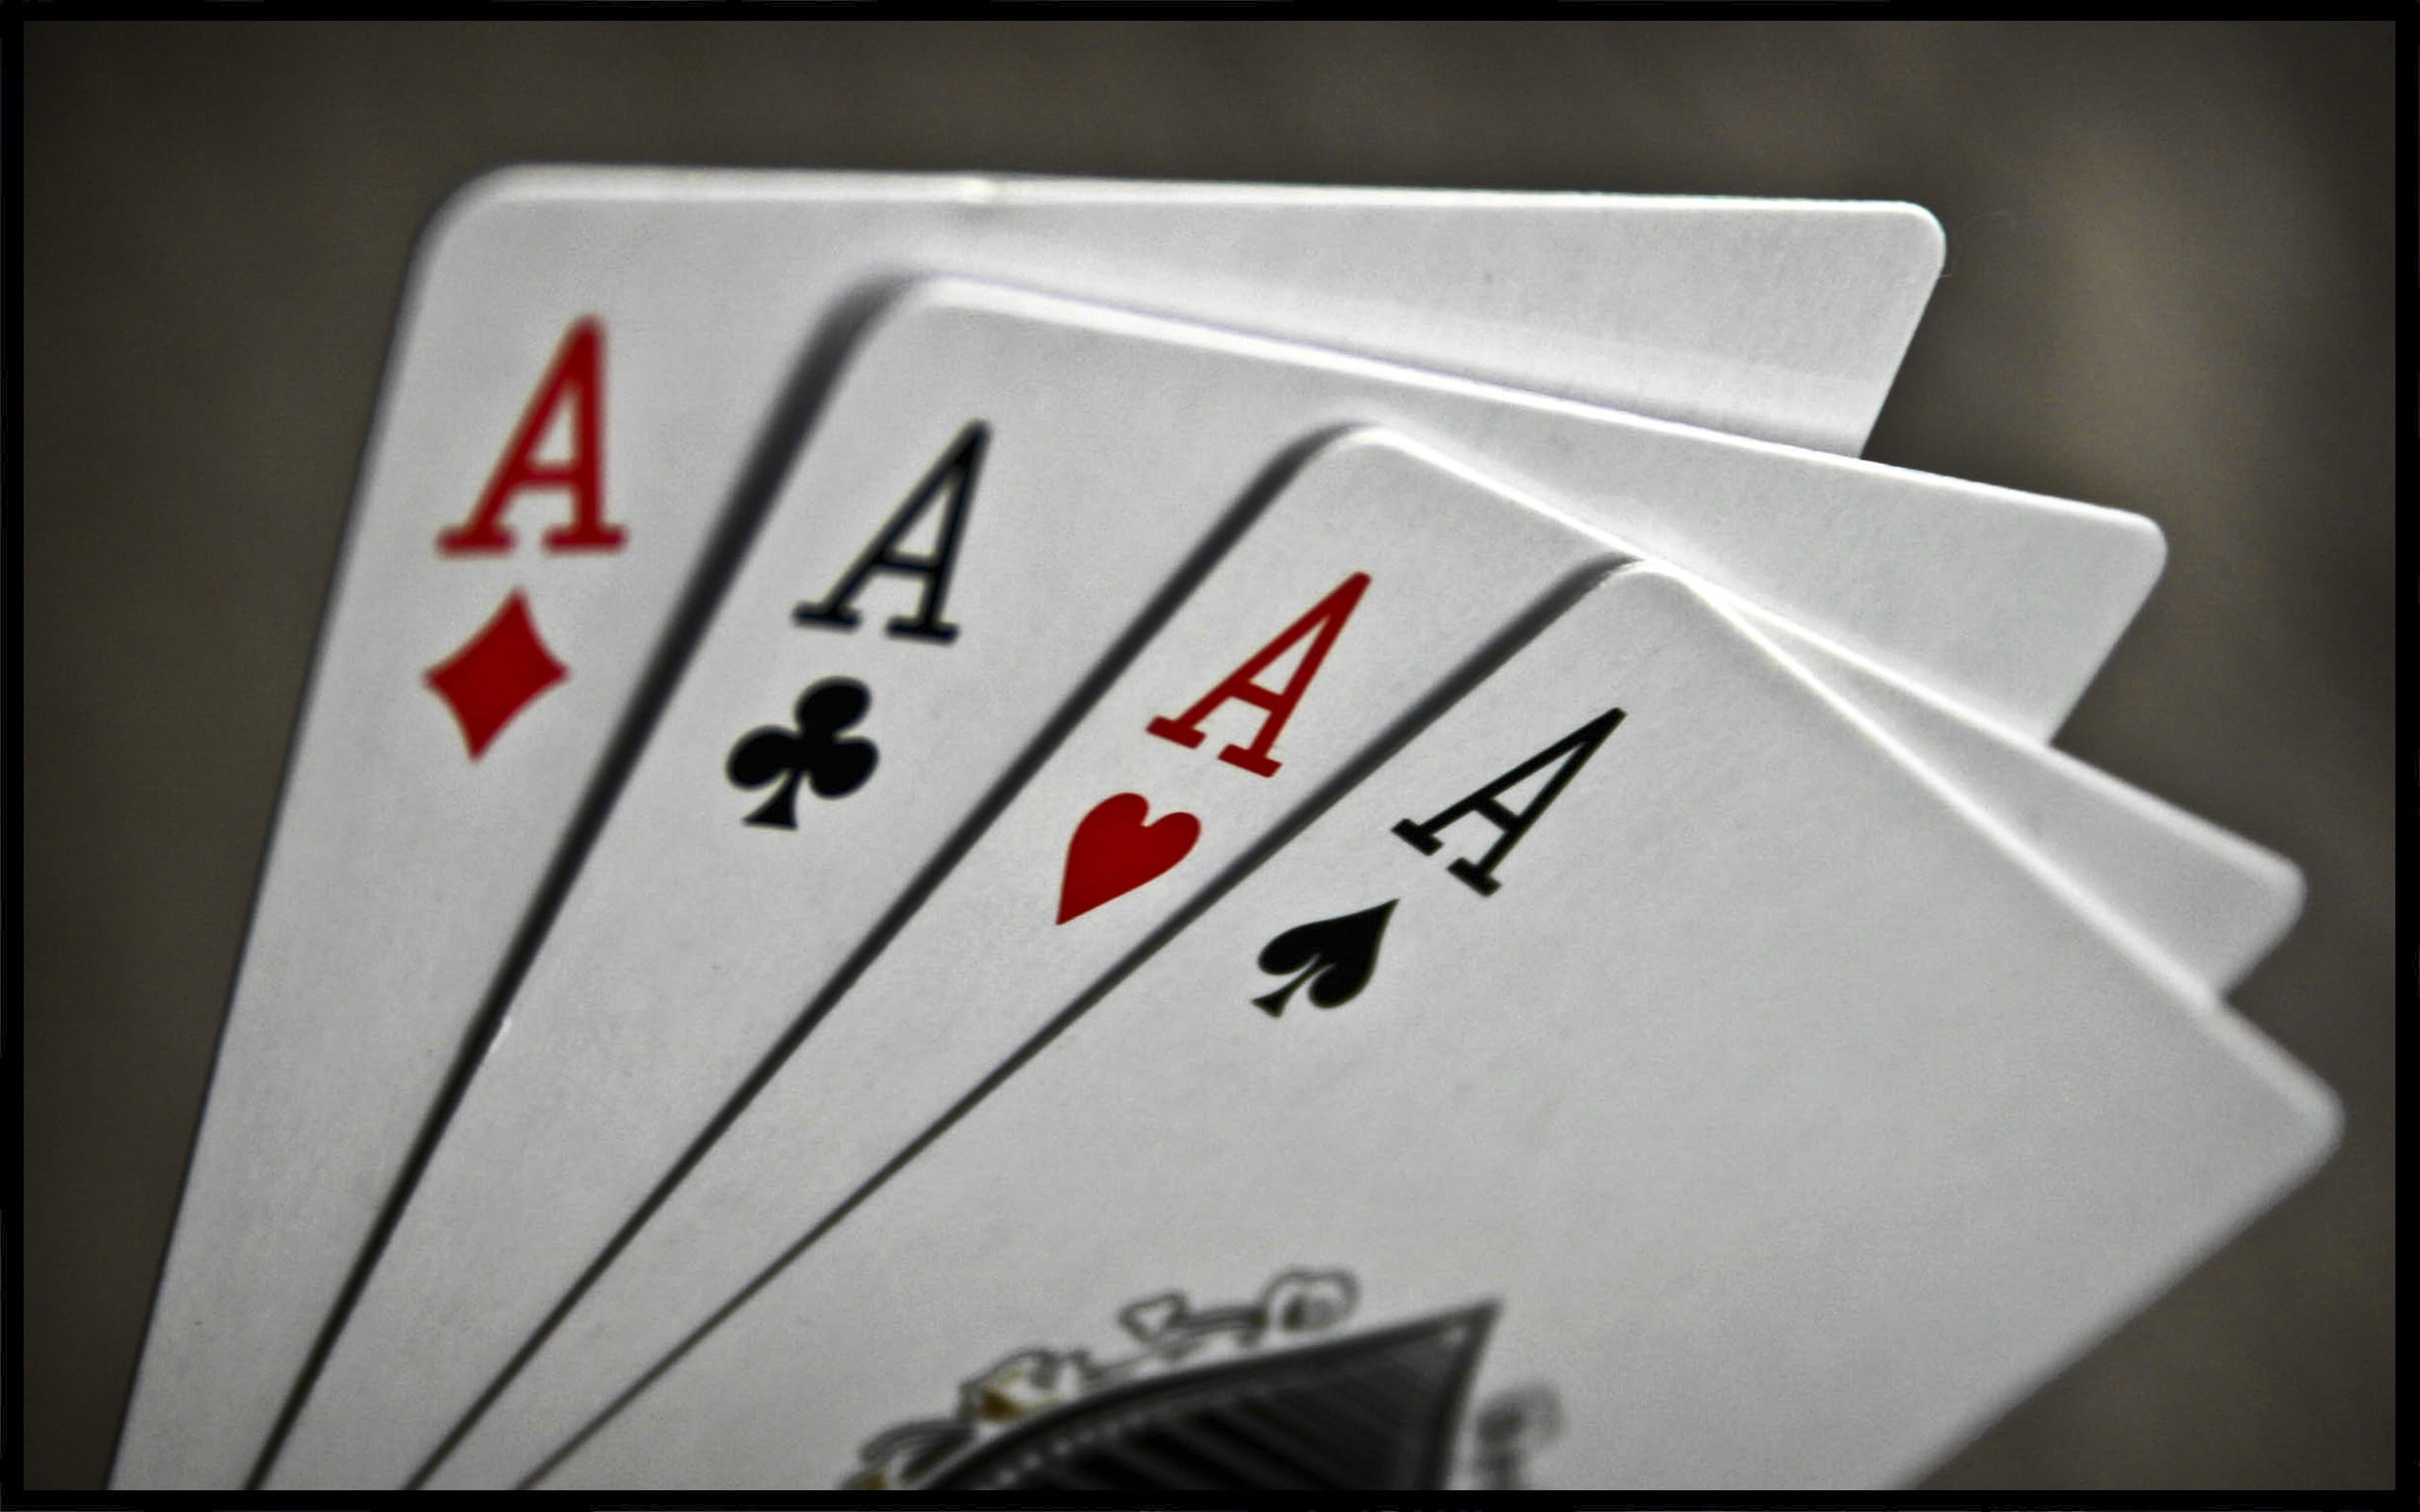 Aces Poker - HD Wallpaper 